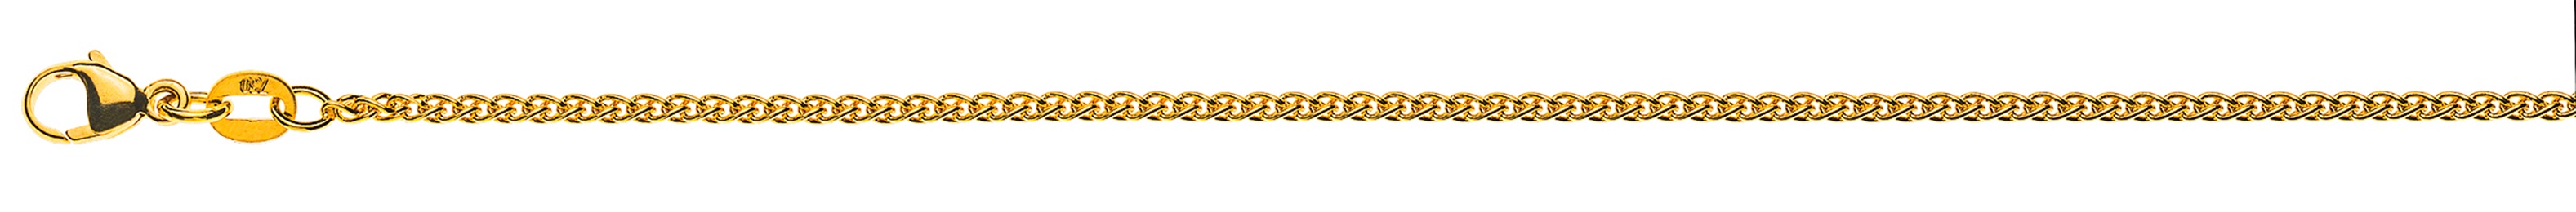 AURONOS Élégance Halskette Gelbgold 14K Zopfkette 38cm 1.6mm